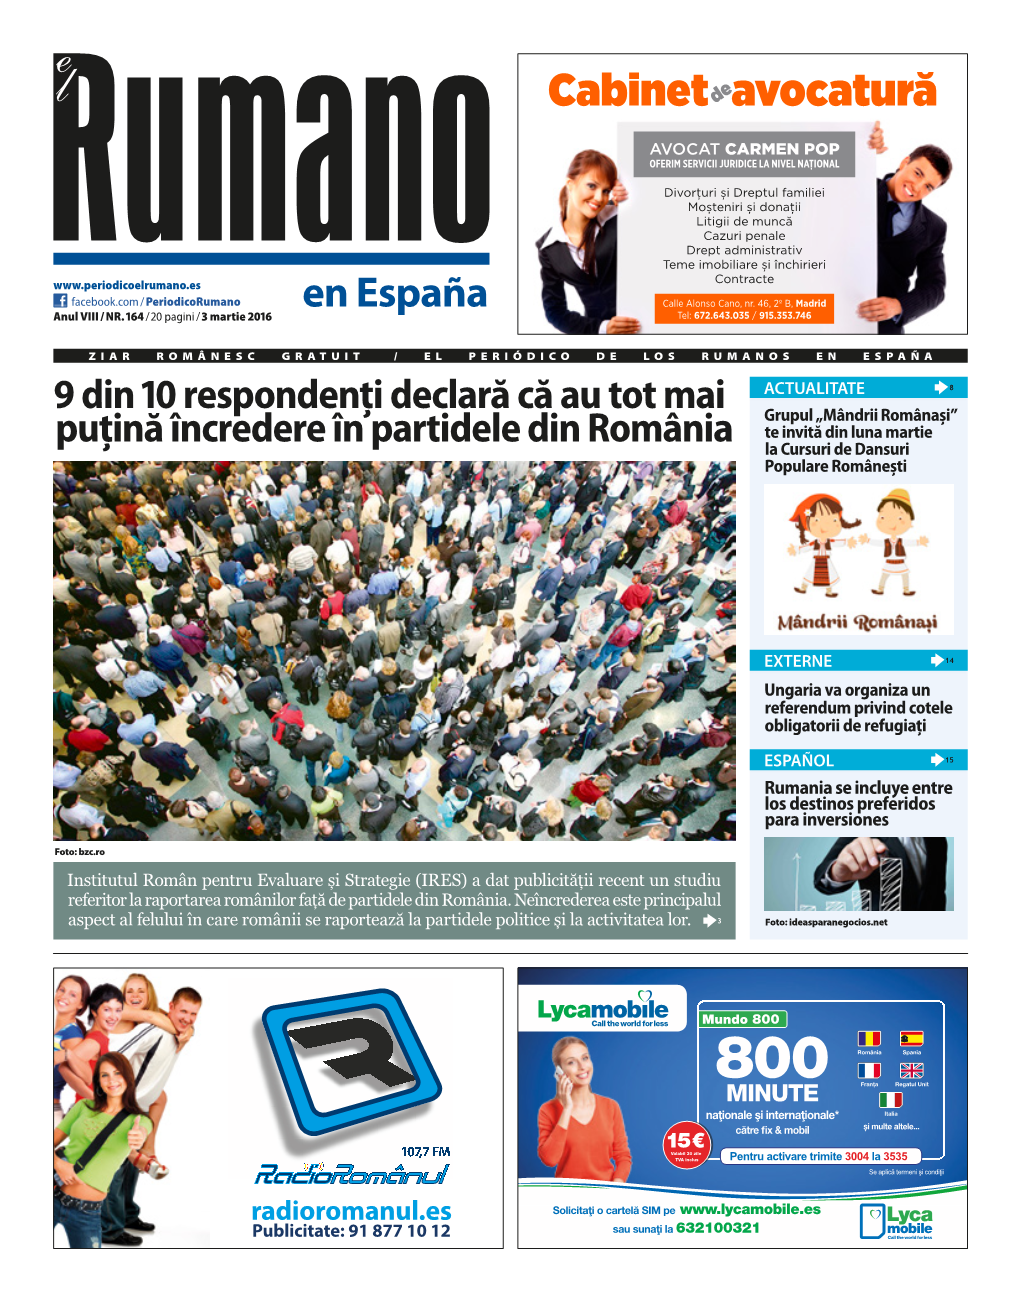 Ziarul El Rumano